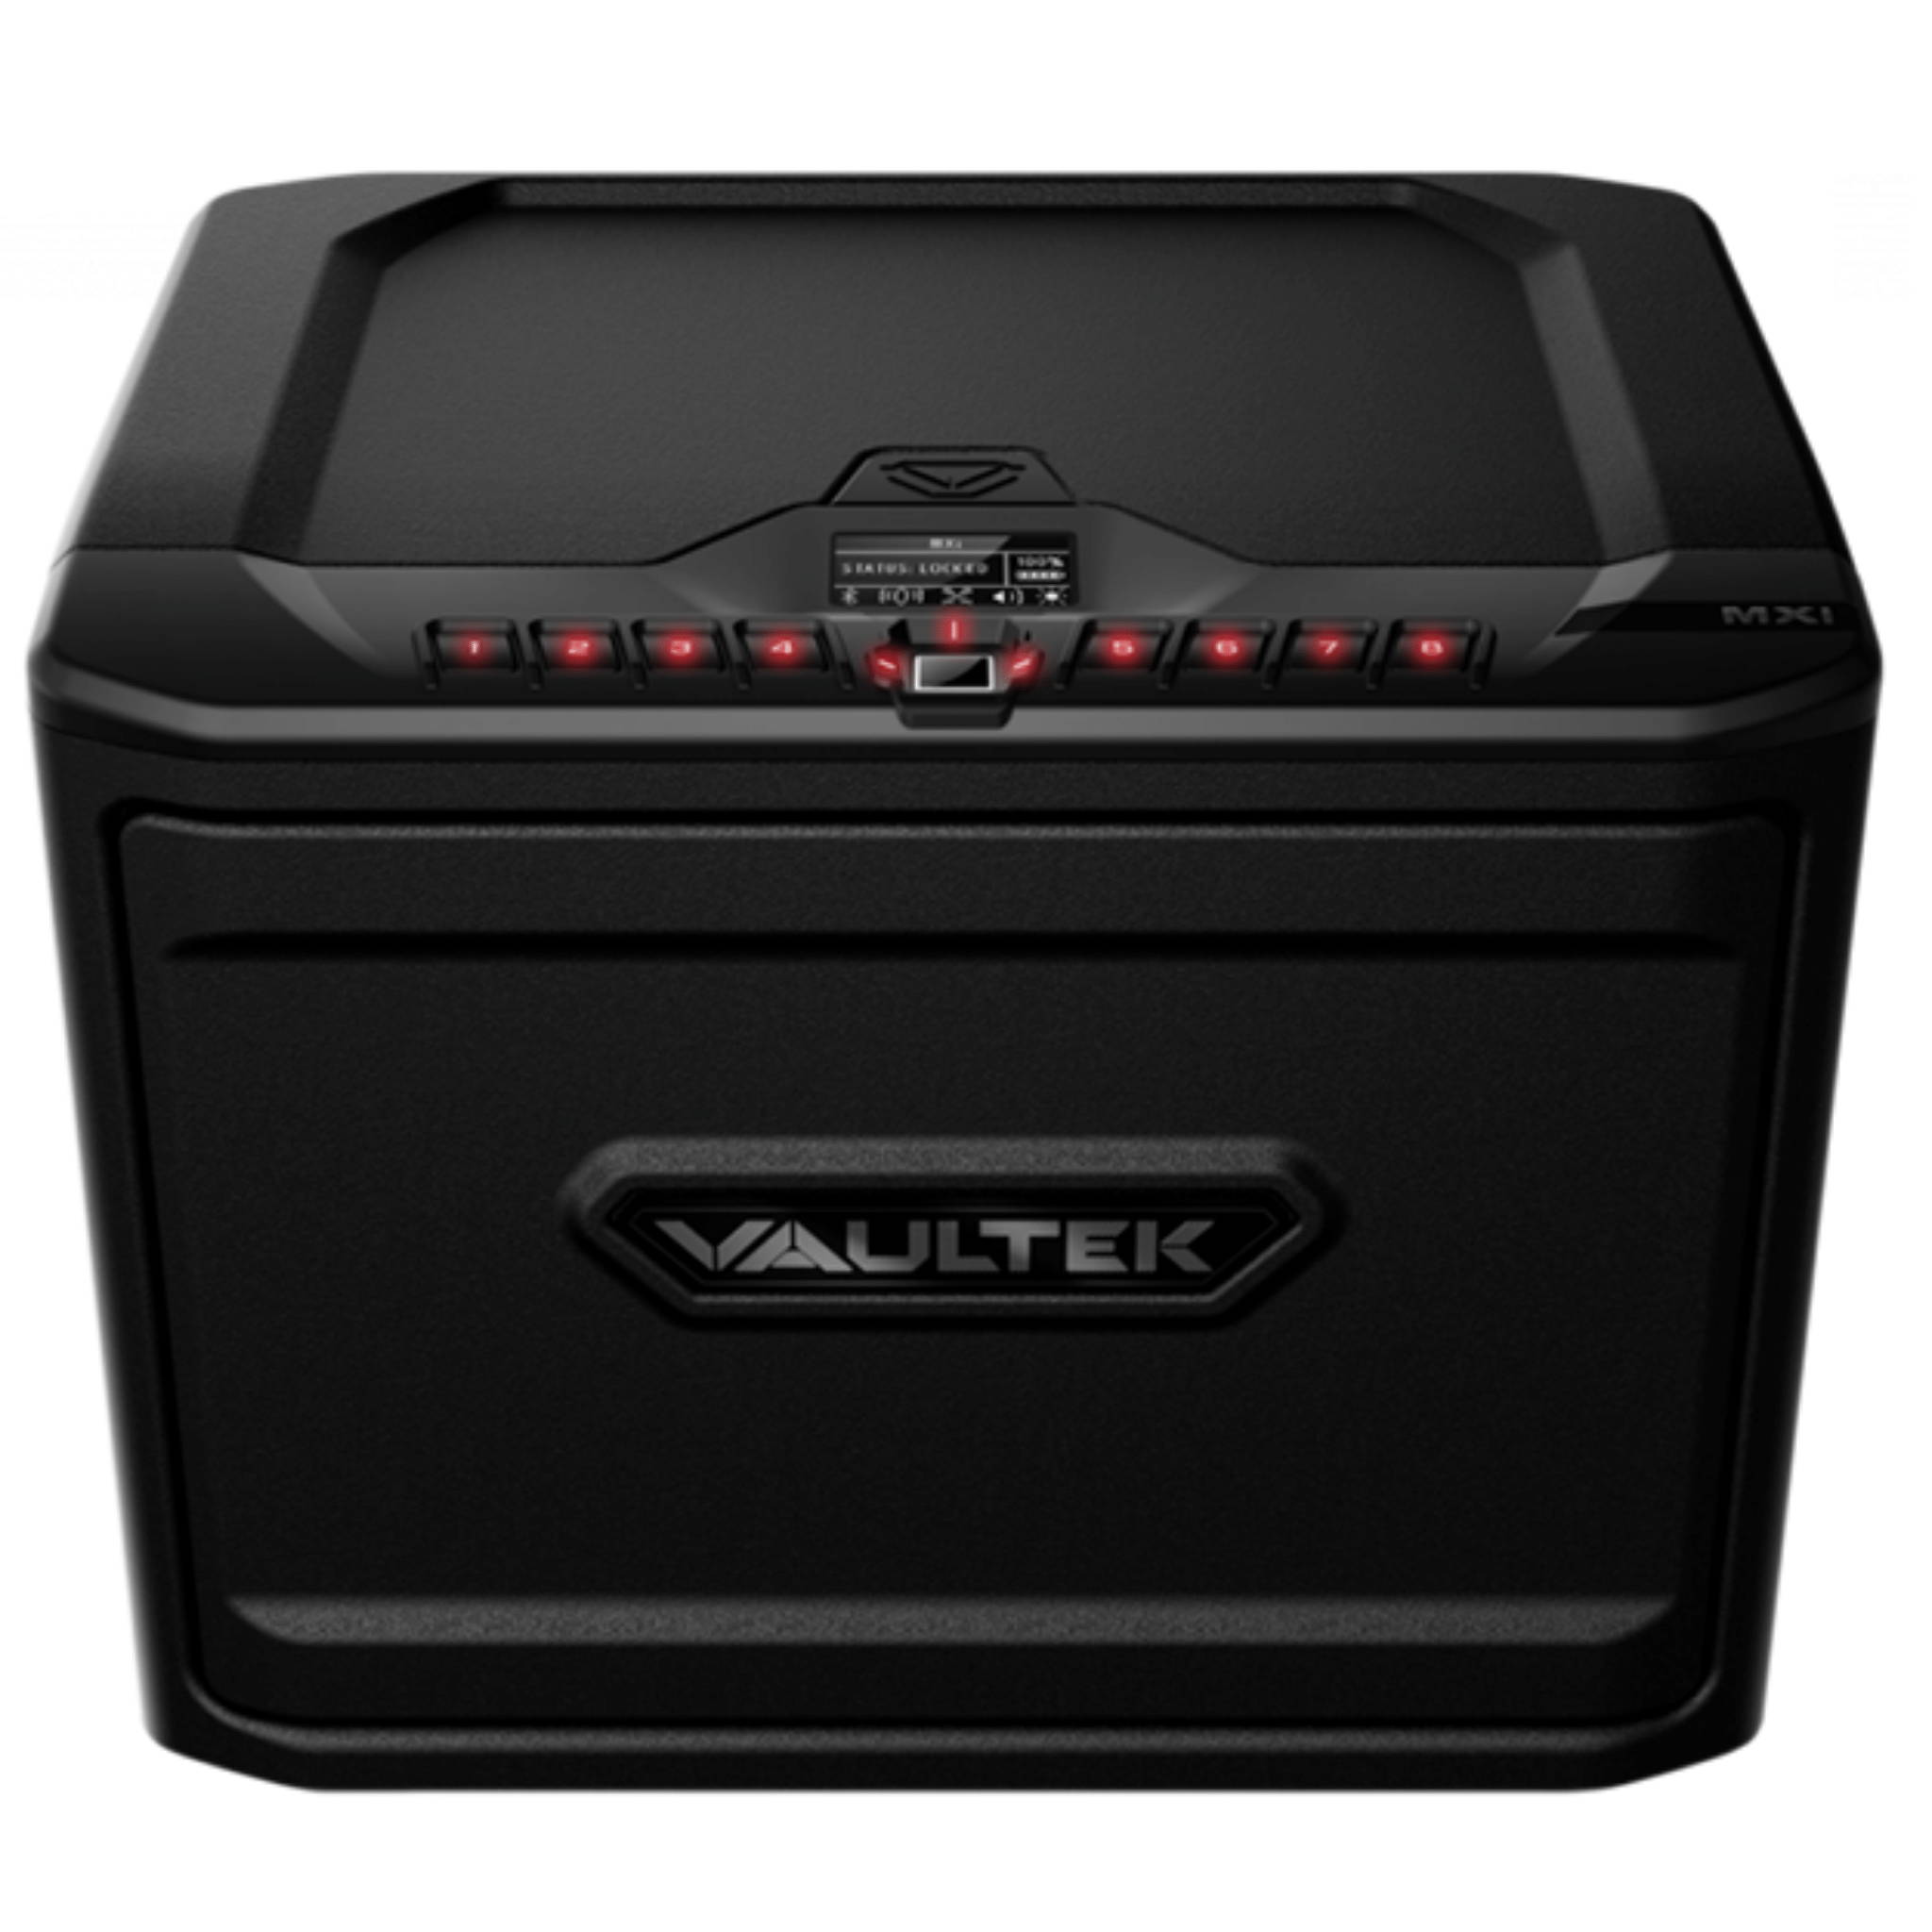 Vaultek MXi - Bluetooth - Biometric